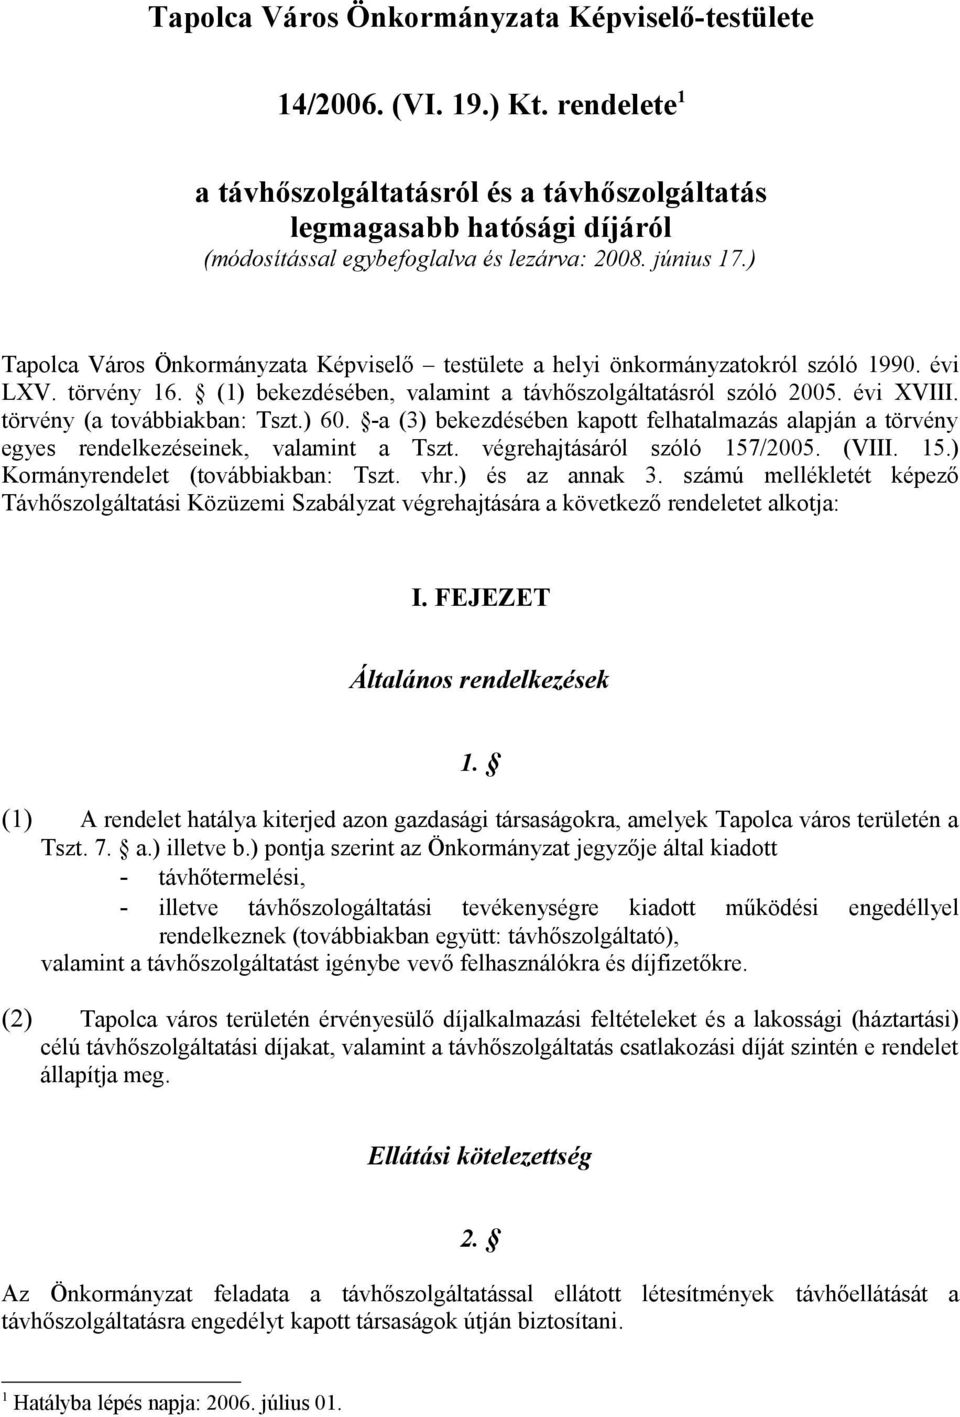 ) Tapolca Város Önkormányzata Képviselő testülete a helyi önkormányzatokról szóló 1990. évi LXV. törvény 16. (1) bekezdésében, valamint a távhőszolgáltatásról szóló 2005. évi XVIII.